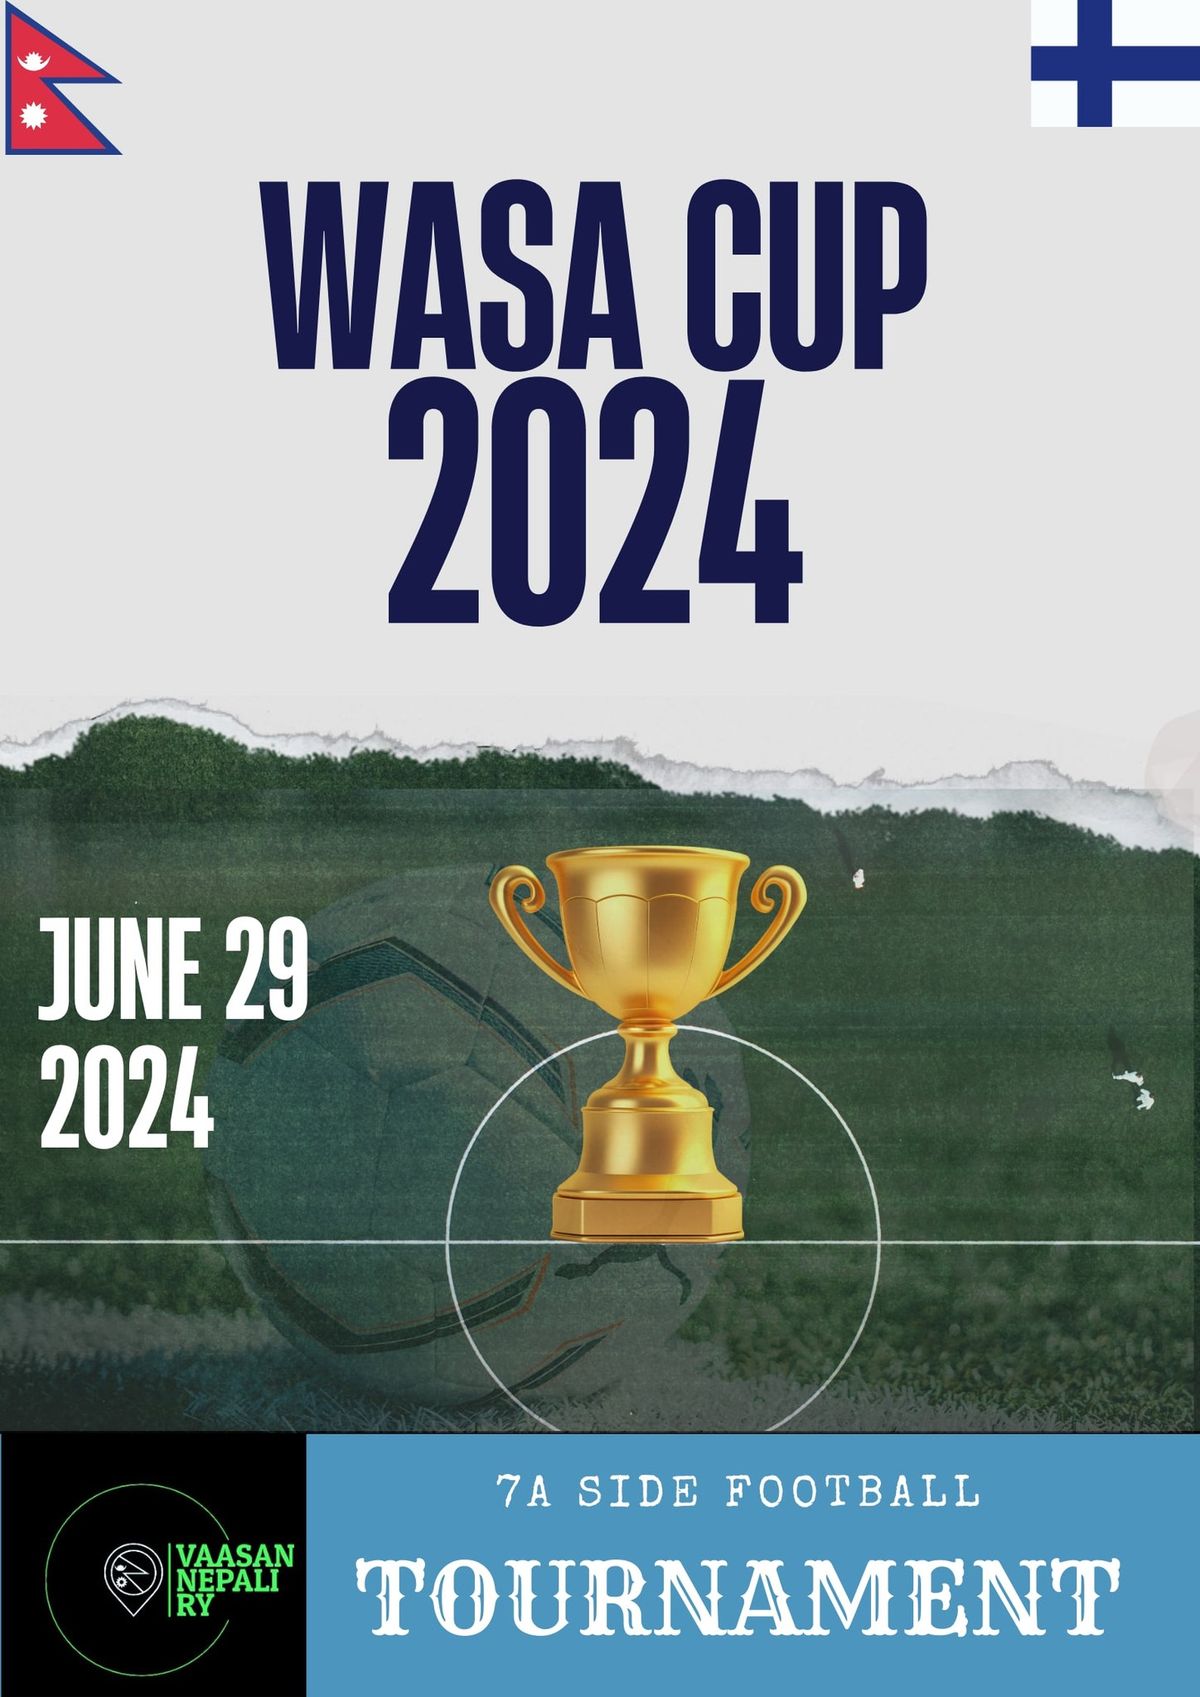 WASA CUP 2024